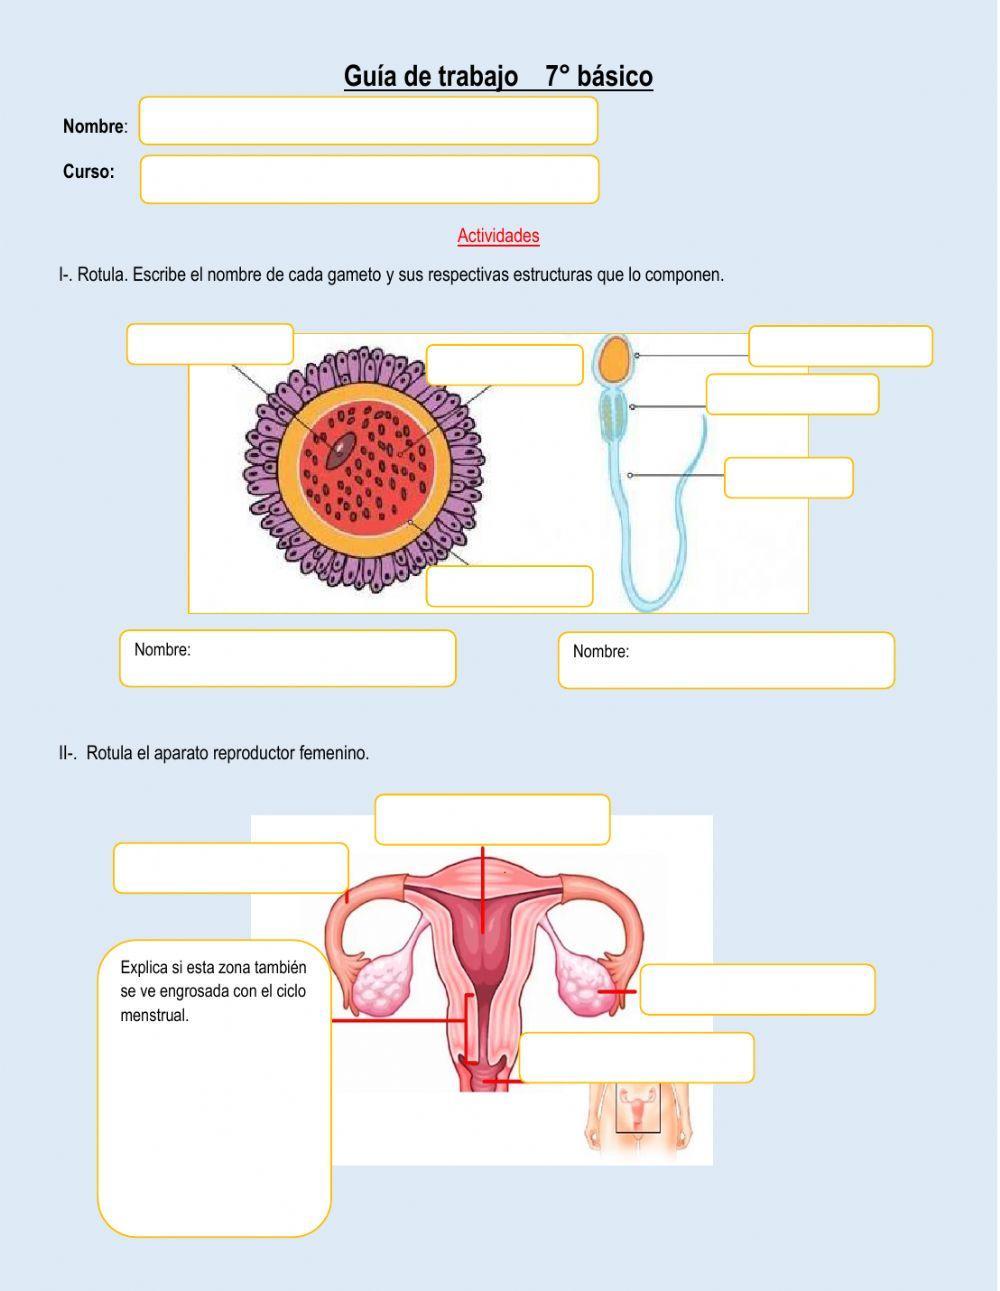 Gametos y ciclo menstrual